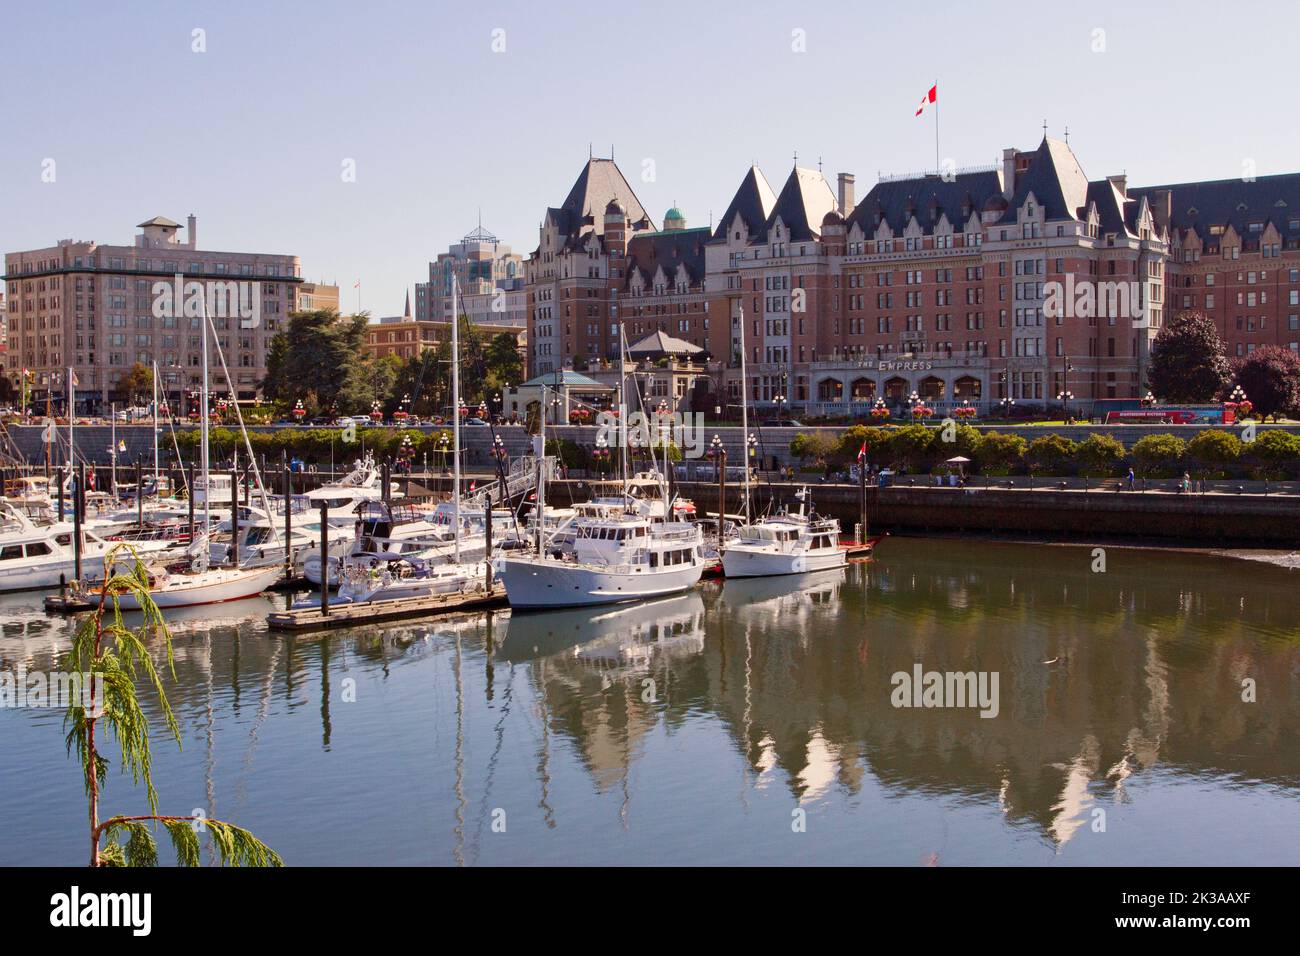 Vue panoramique de l'hôtel Fairmont Empress le long de la rue Government, Victoria (Colombie-Britannique), Canada, avec le port intérieur en premier plan. Banque D'Images